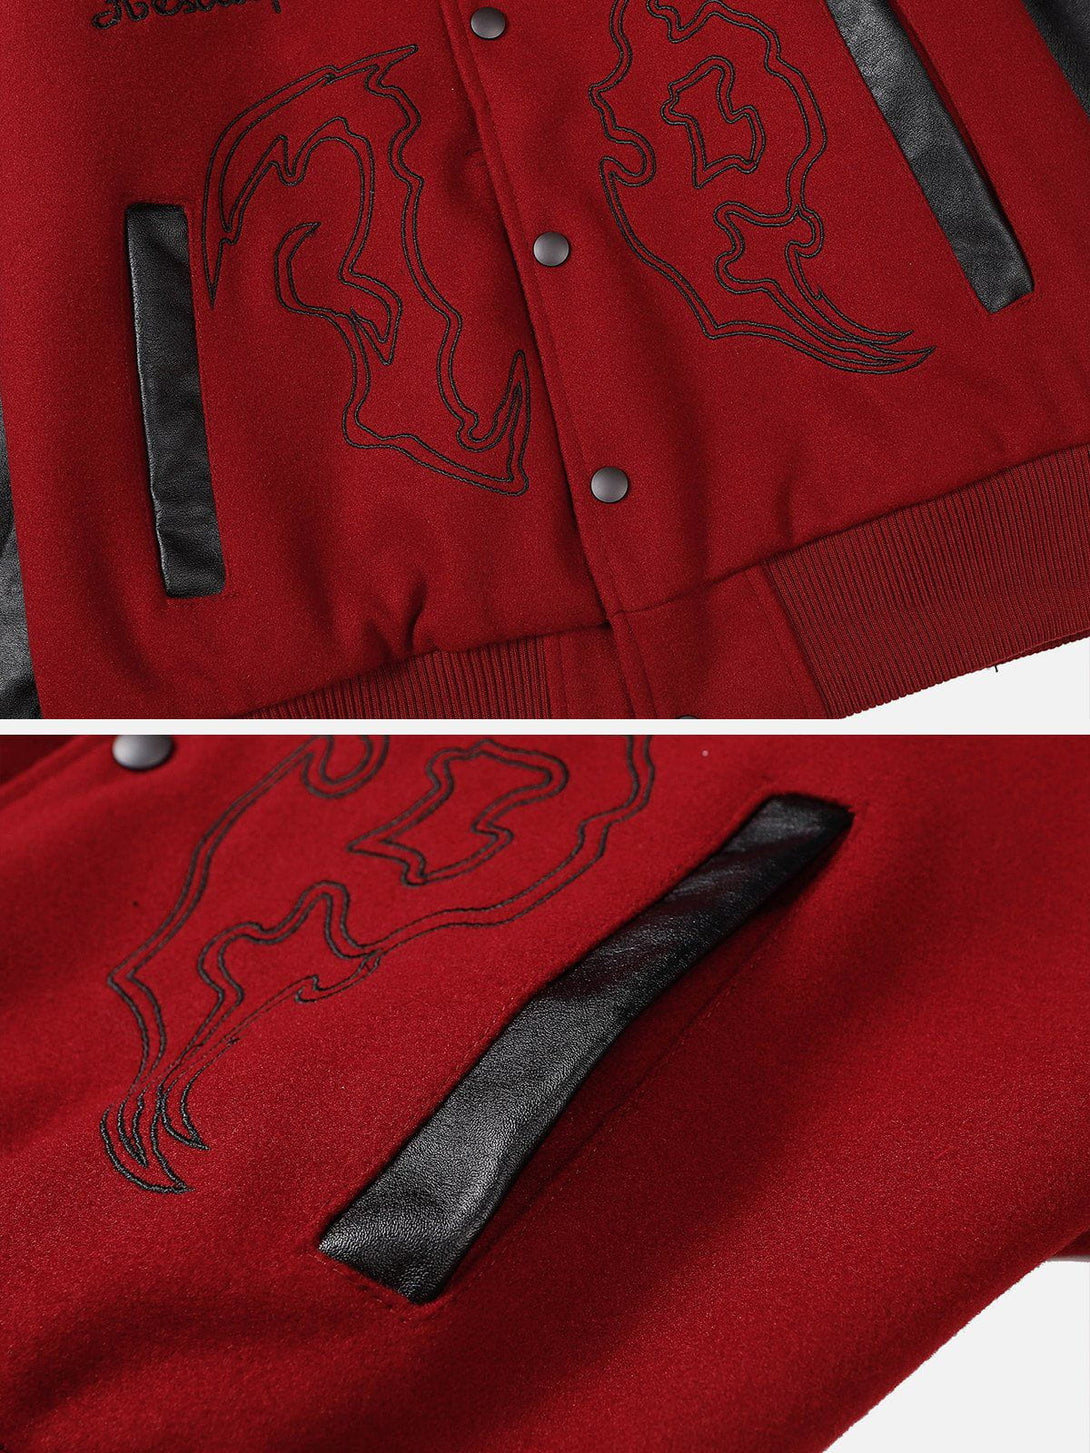 Majesda® - Flame Embroidery Patchwork PU Jacket outfit ideas, streetwear fashion - majesda.com